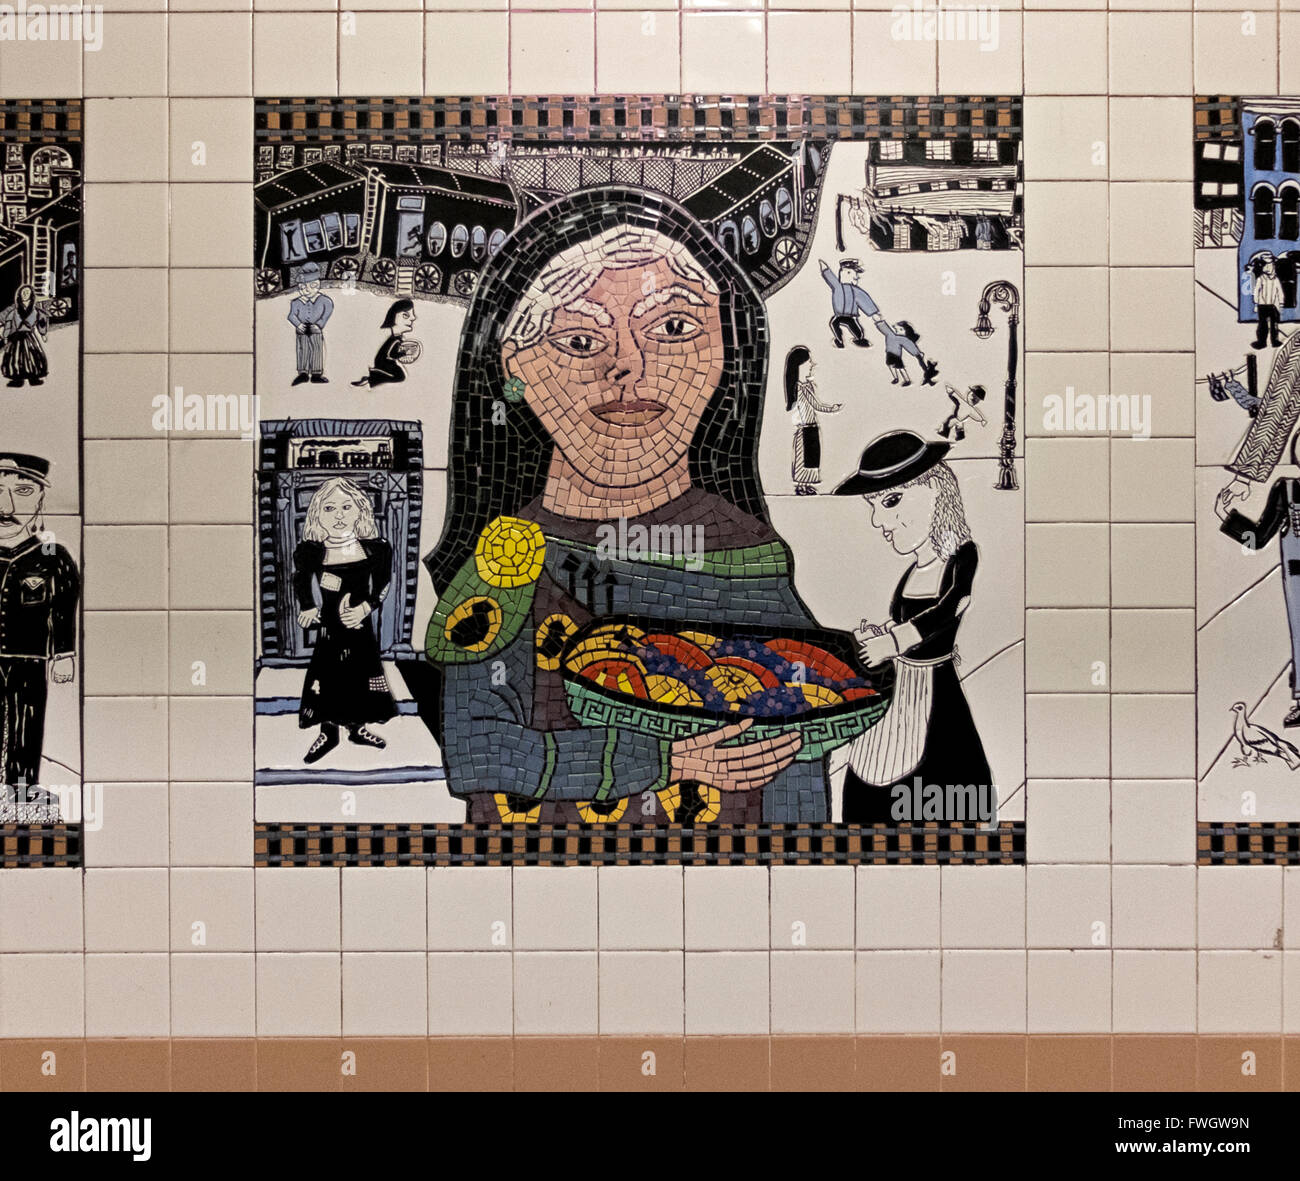 U-Bahn-Kunst in der Christopher Street stop auf der IRT 7. Avenuie Linie in West Village, New York City. Stockfoto